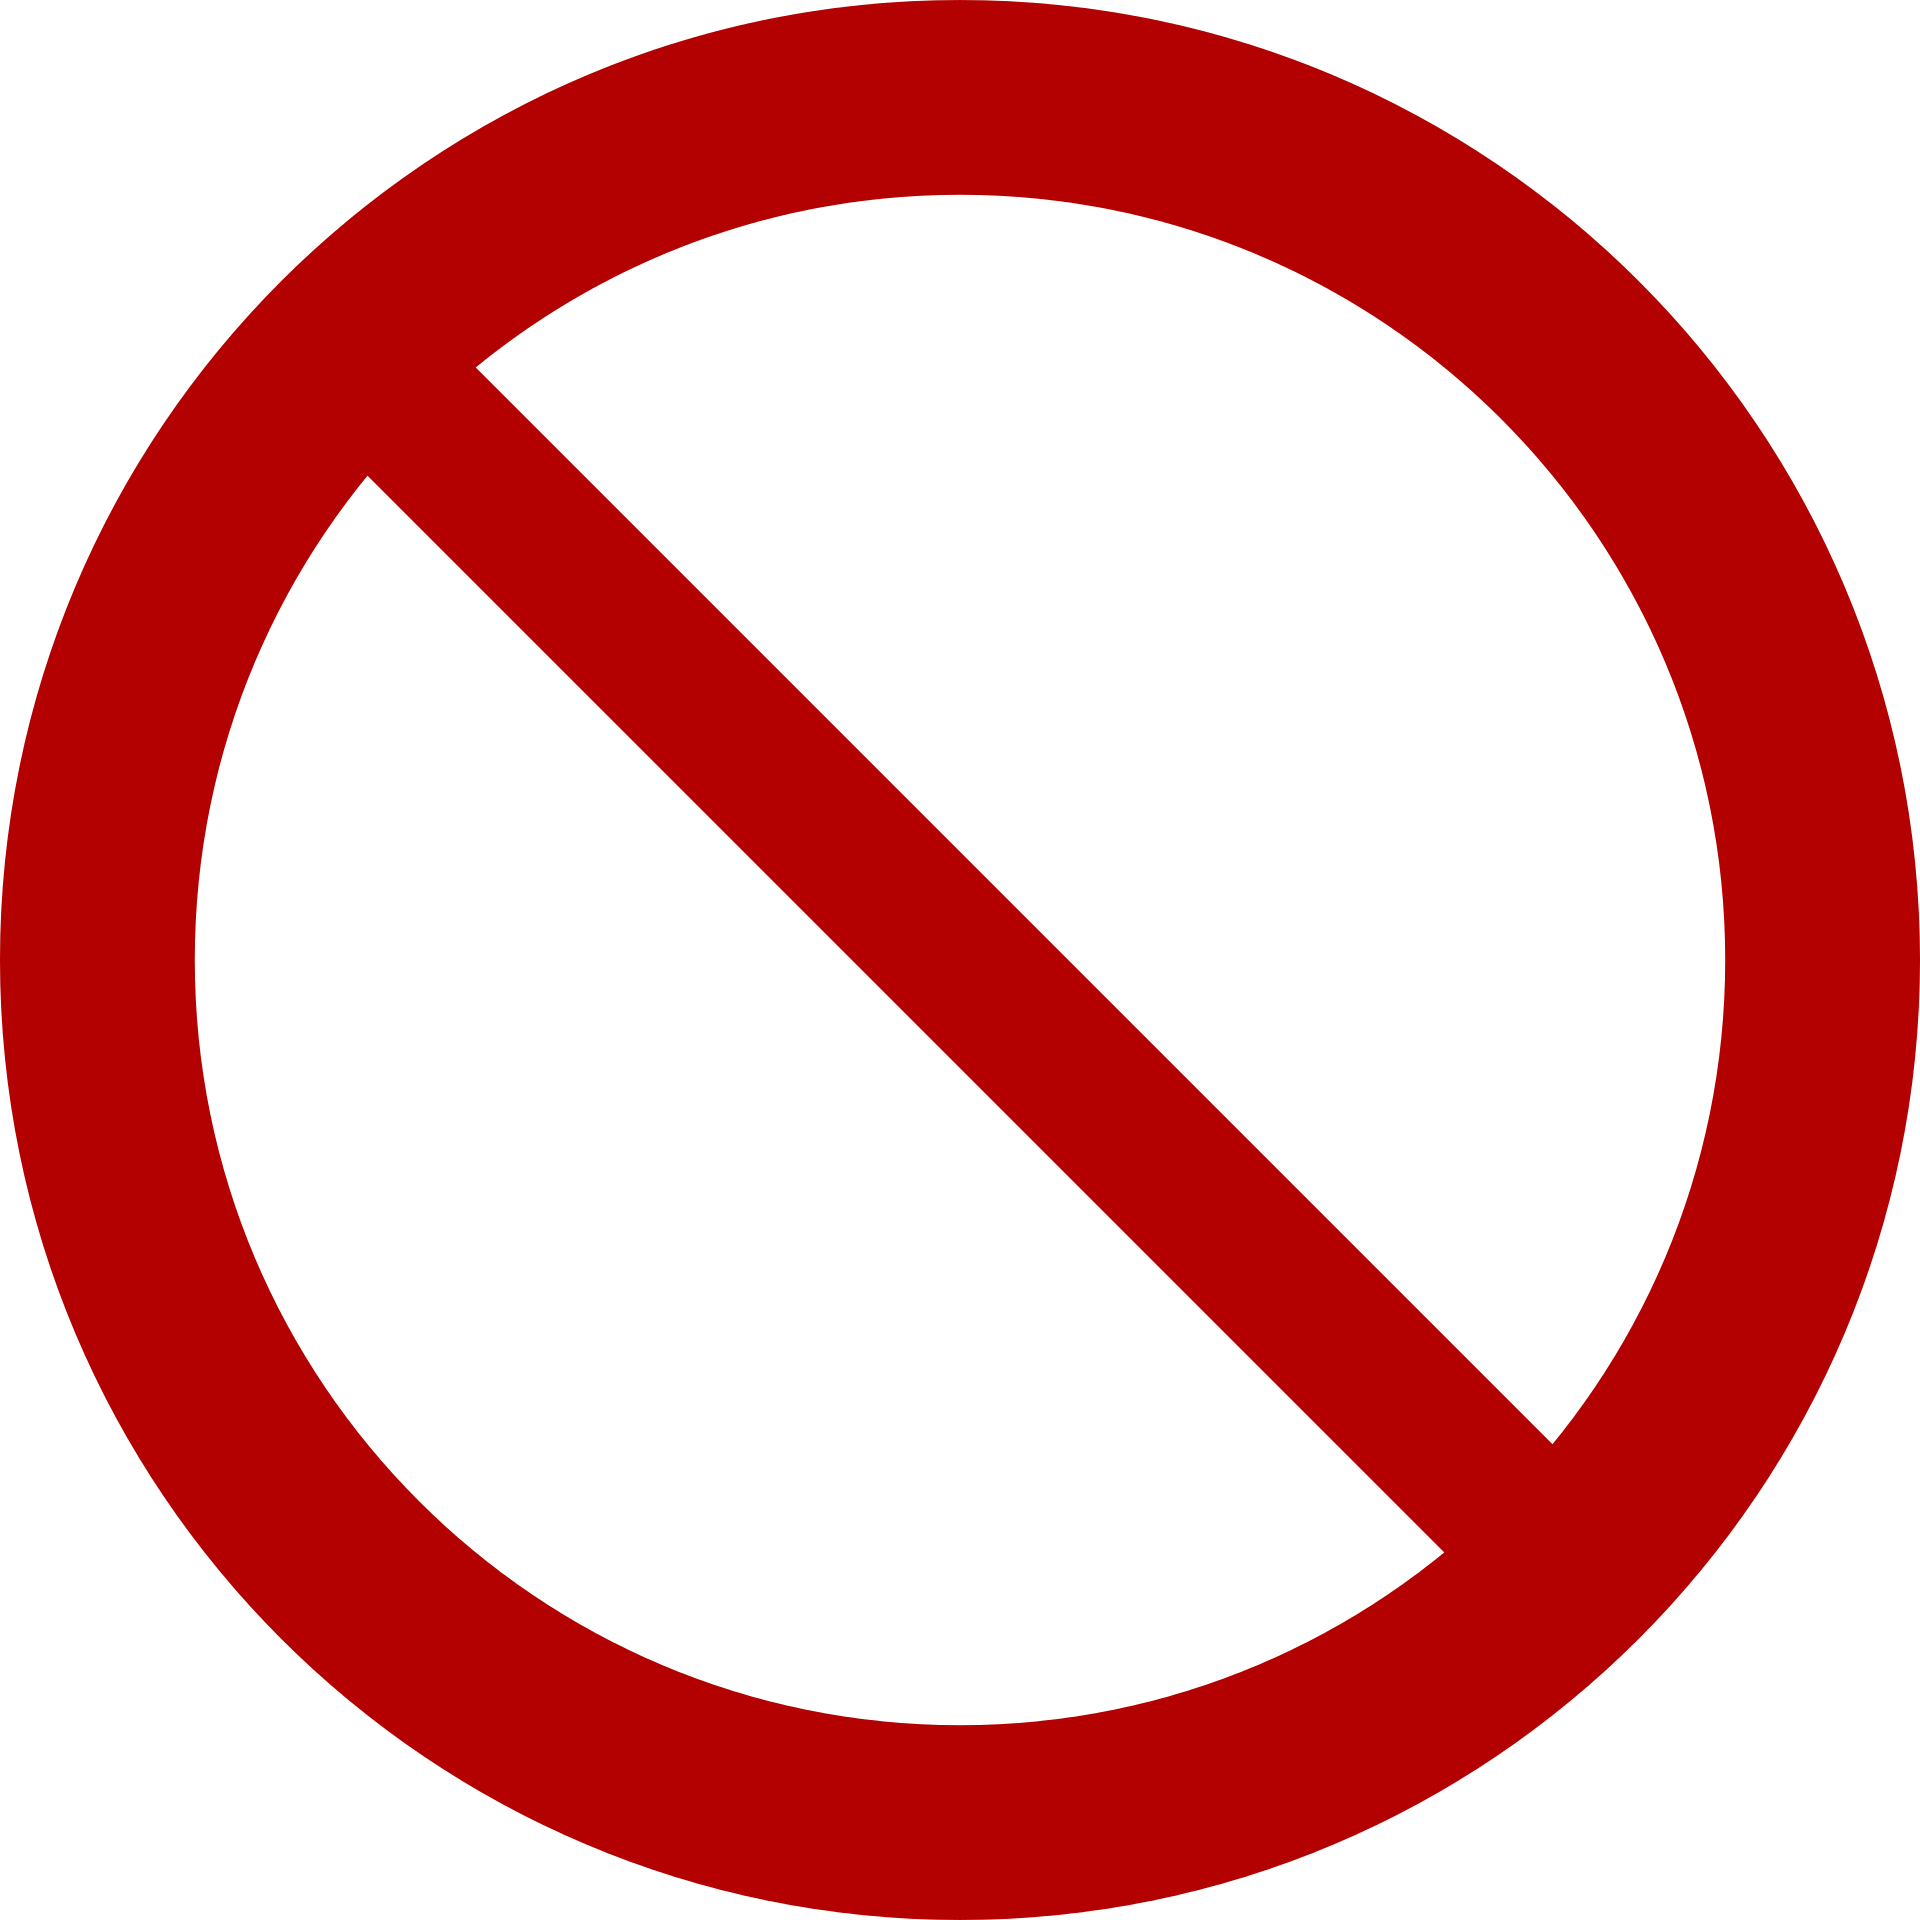 No symbol - Wikipedia